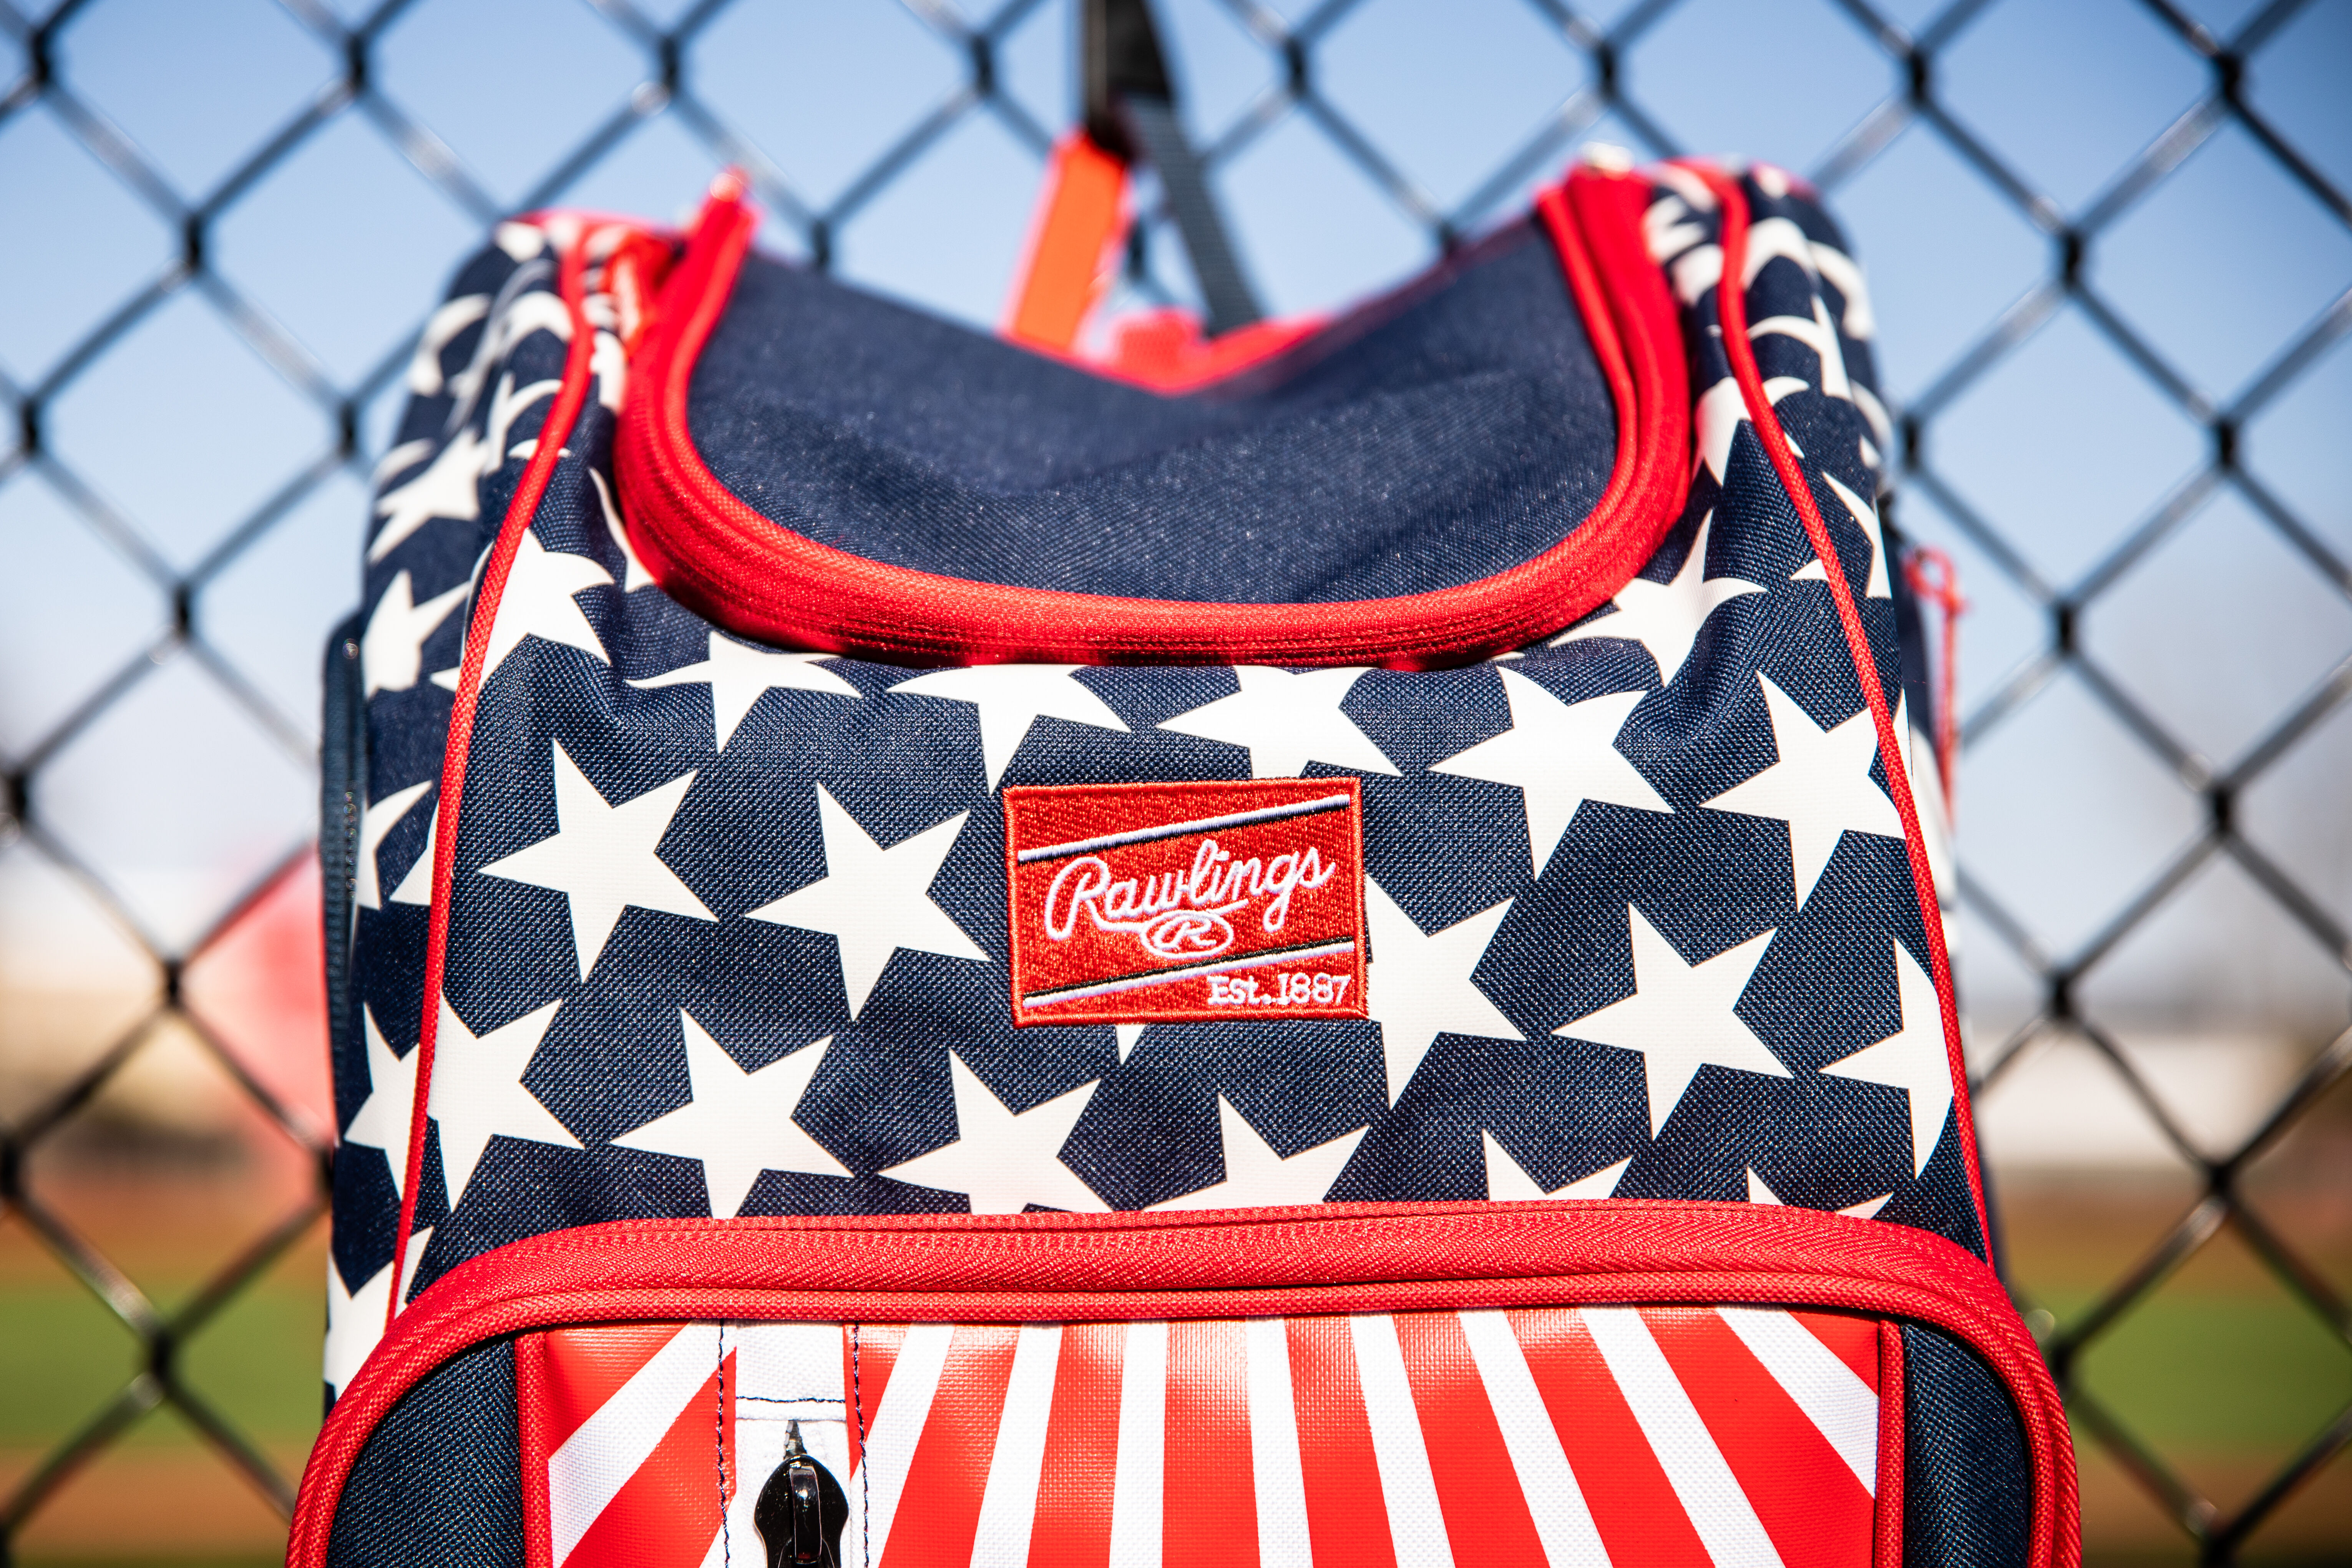 Rawlings Legion Backpack | Top Baseball Gear Bags | Rawlings